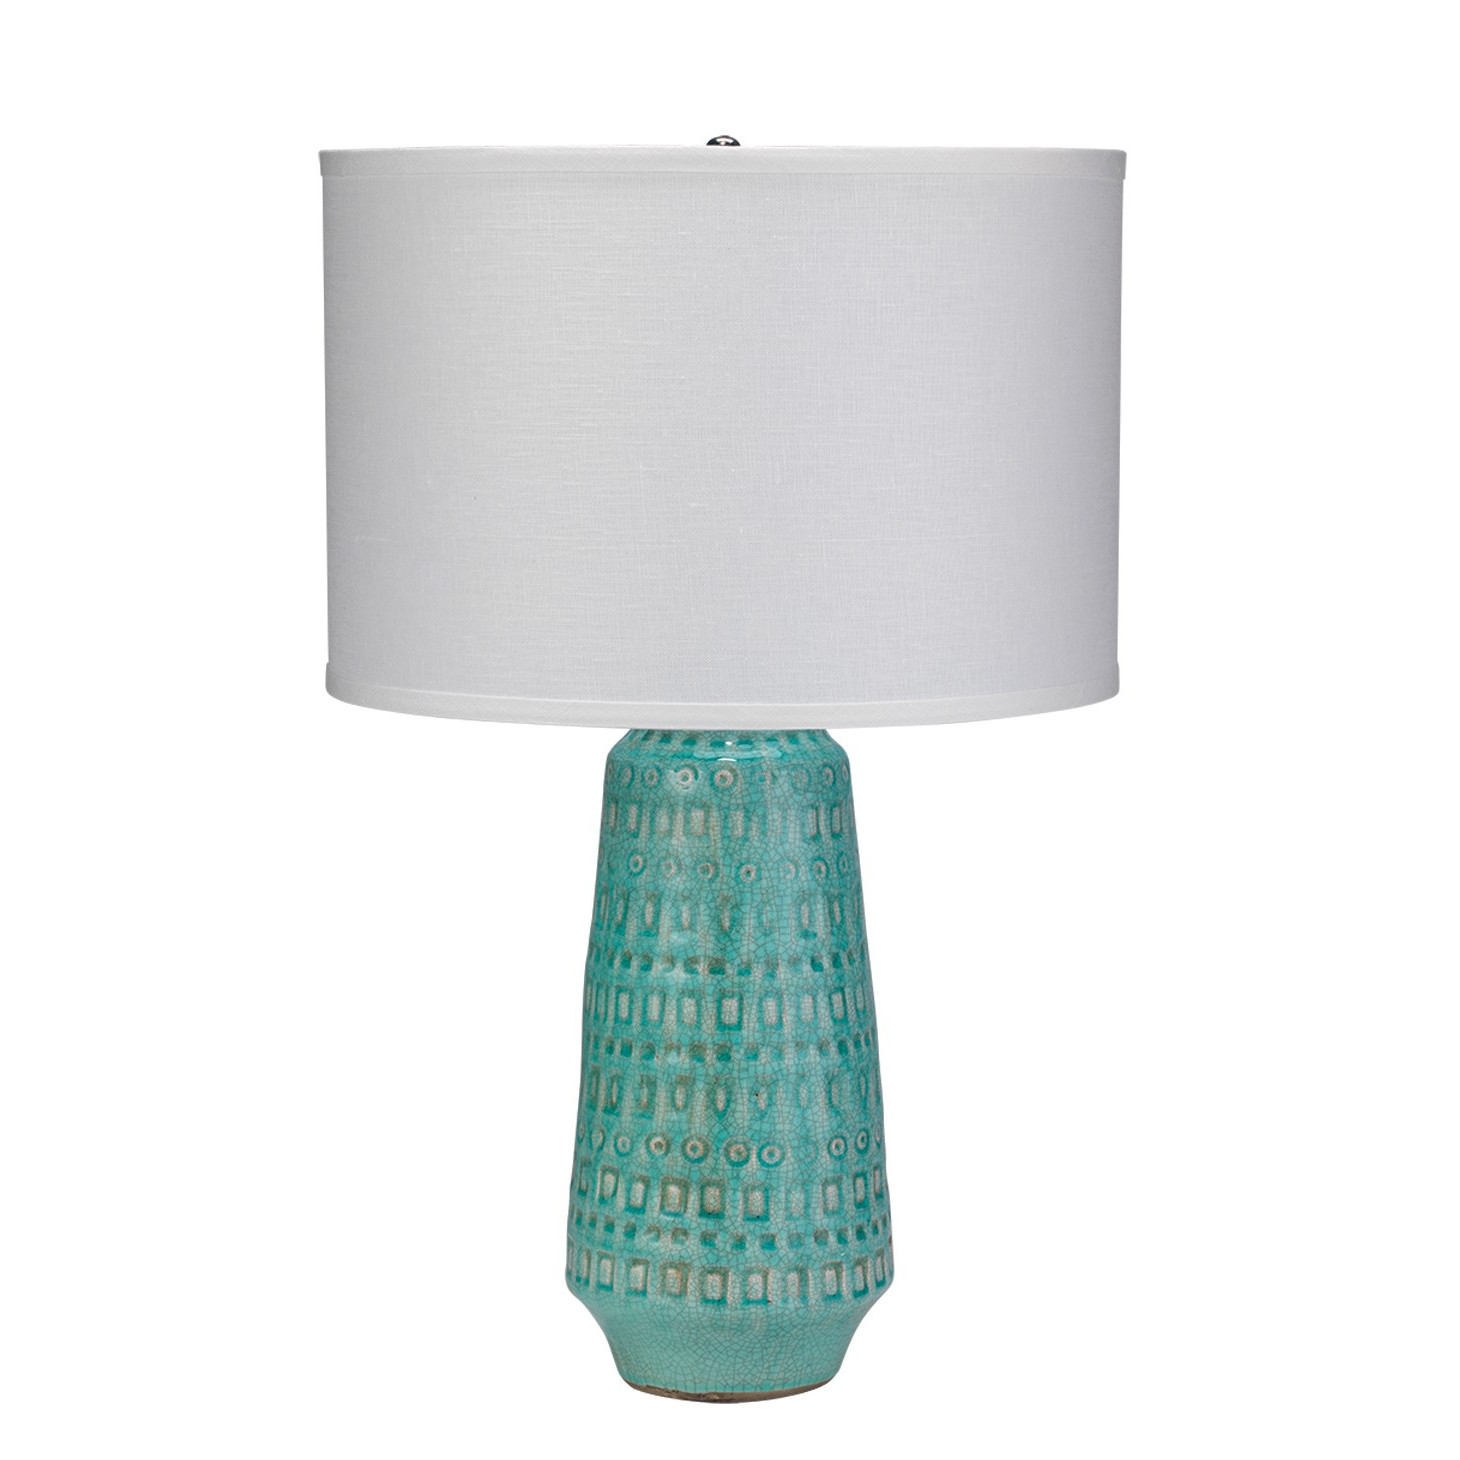 Turquoise Ceramic Lamp